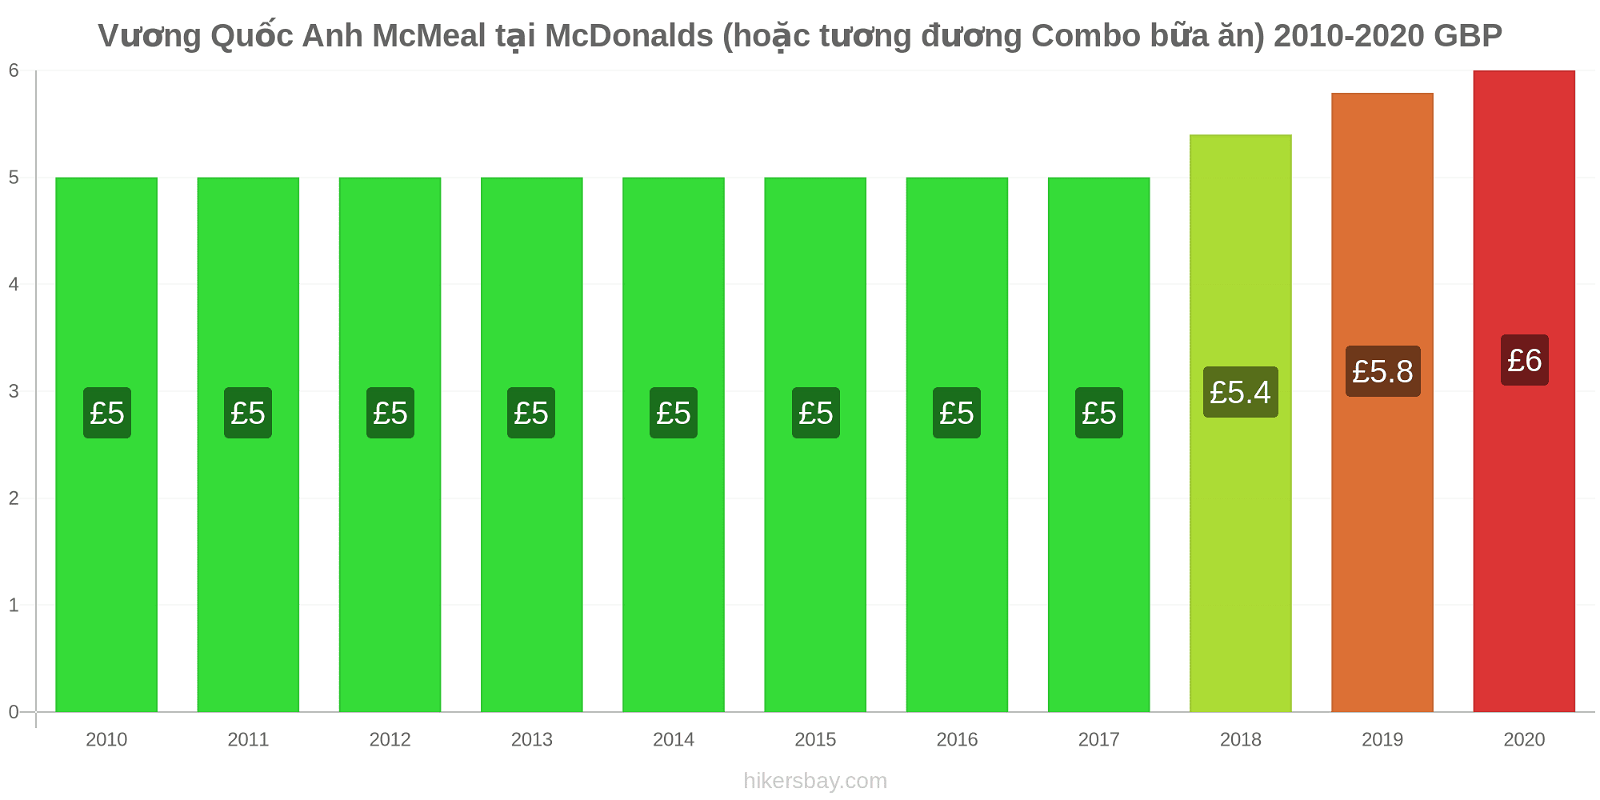 Vương Quốc Anh thay đổi giá McMeal tại McDonalds (hoặc tương đương Combo bữa ăn) hikersbay.com